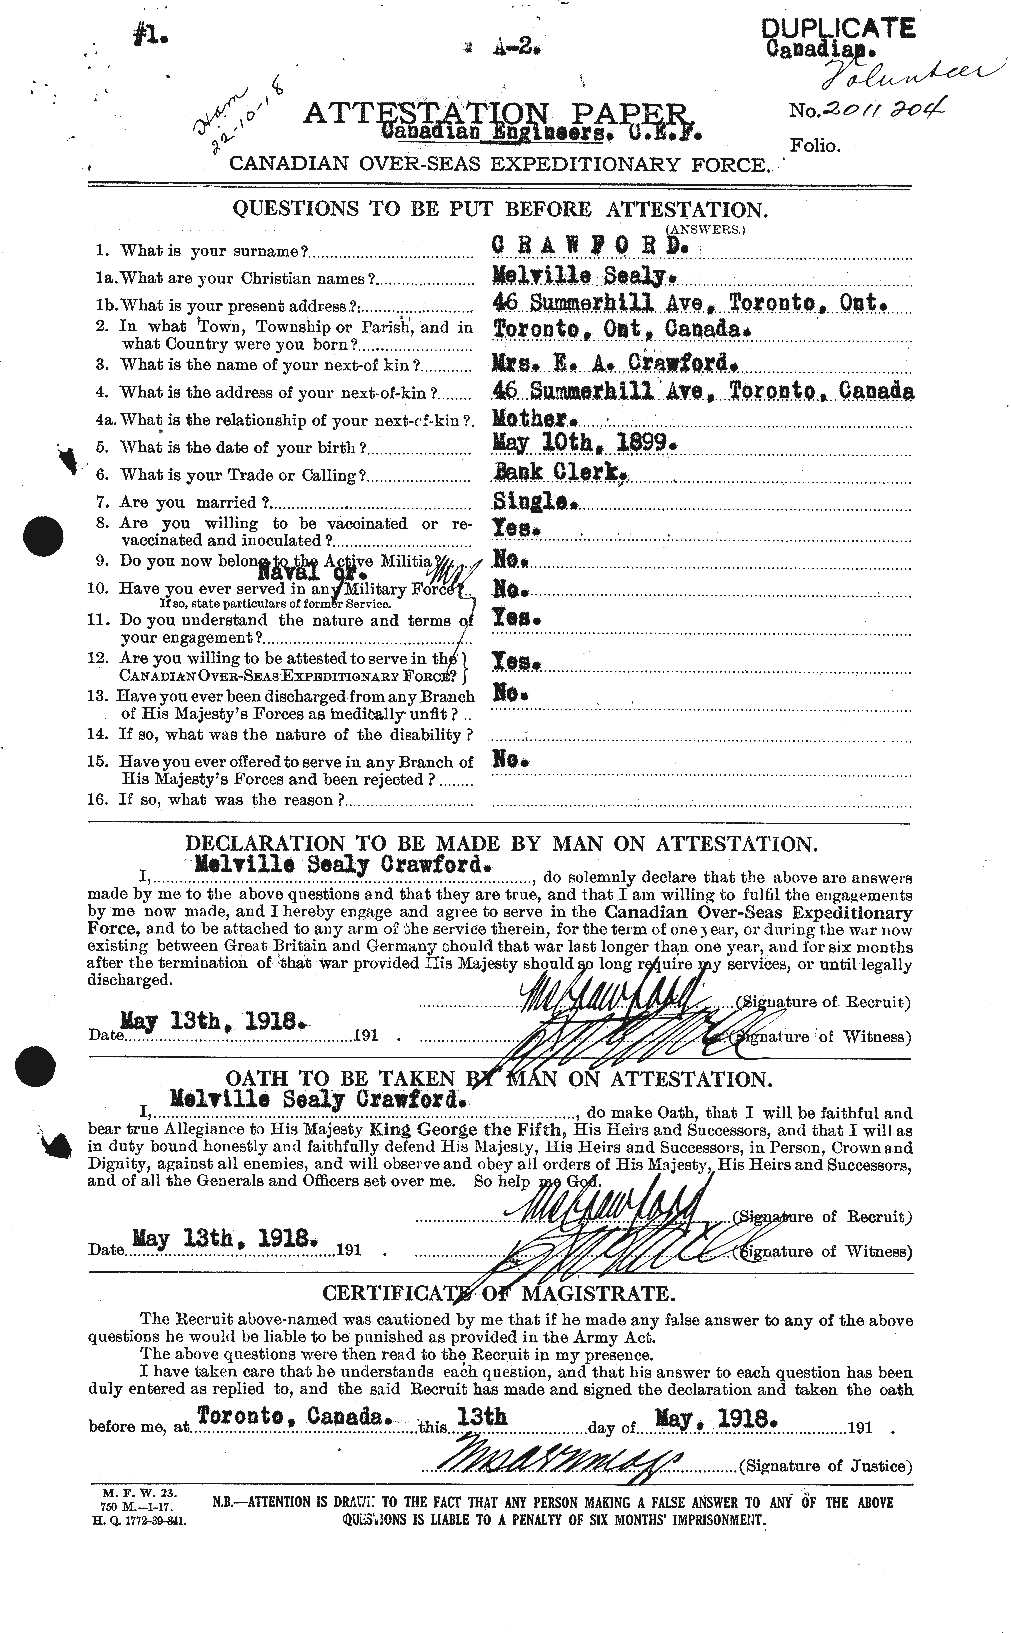 Dossiers du Personnel de la Première Guerre mondiale - CEC 061778a